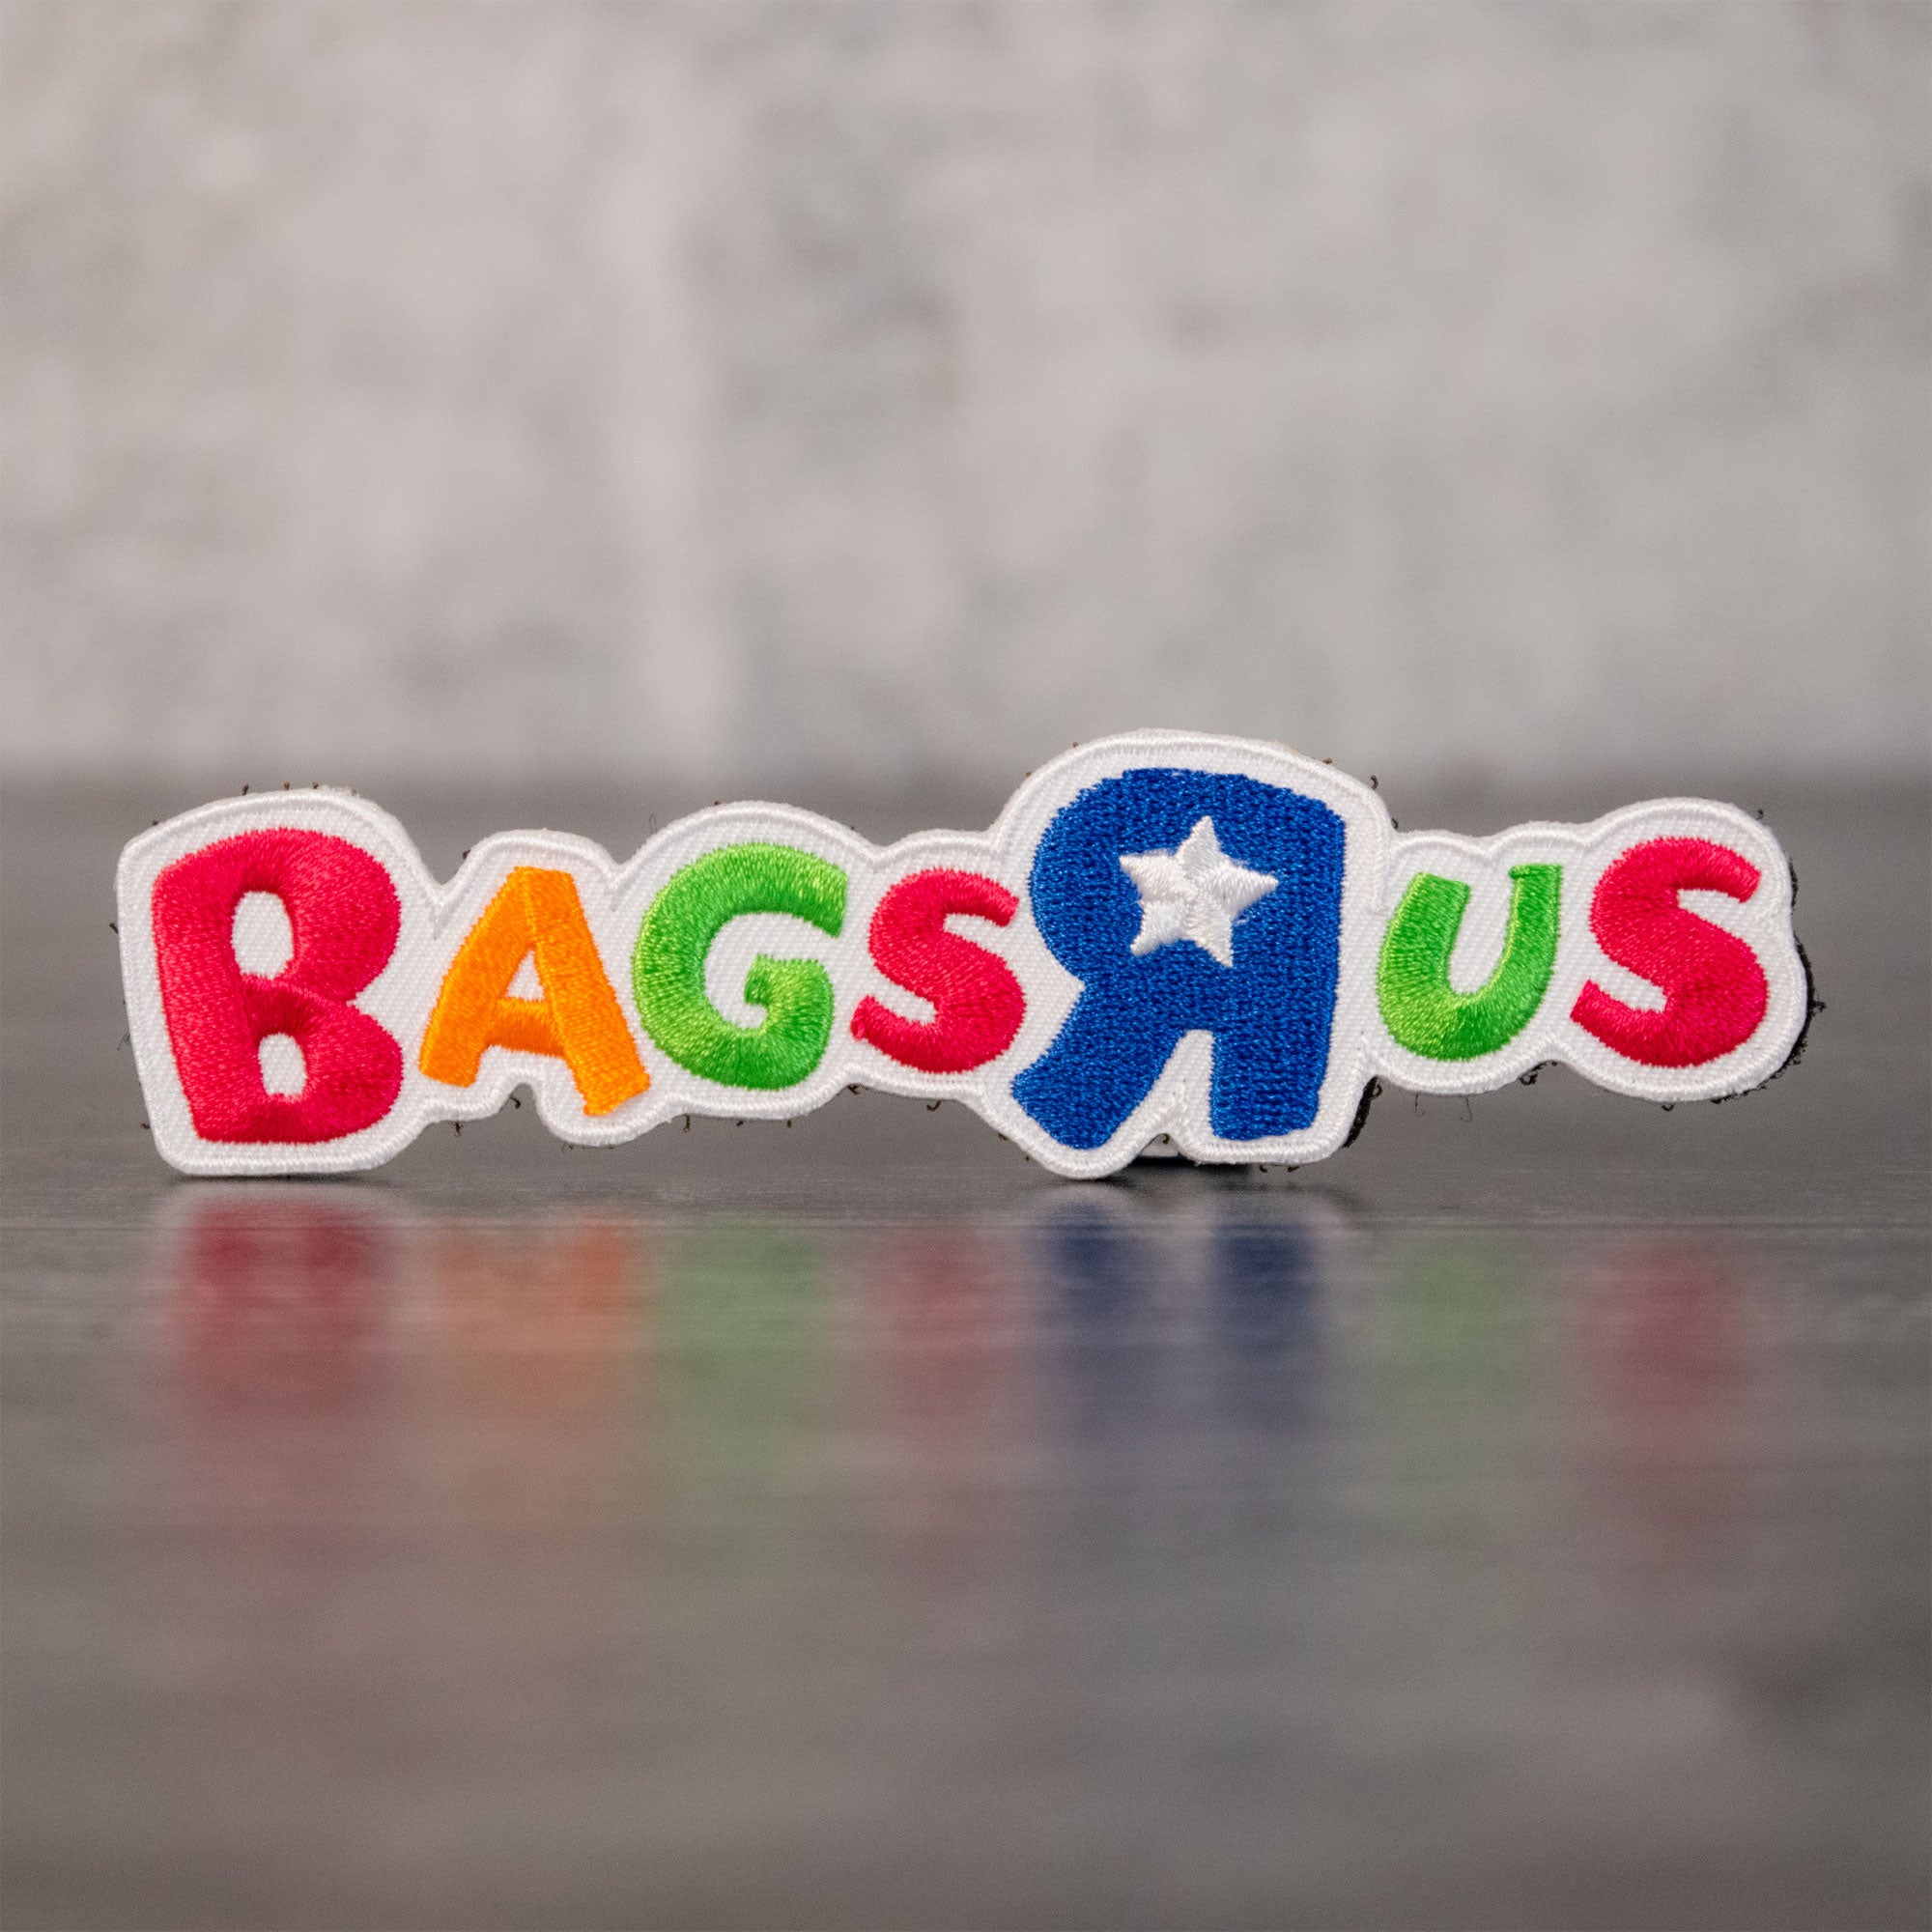 Bags R us